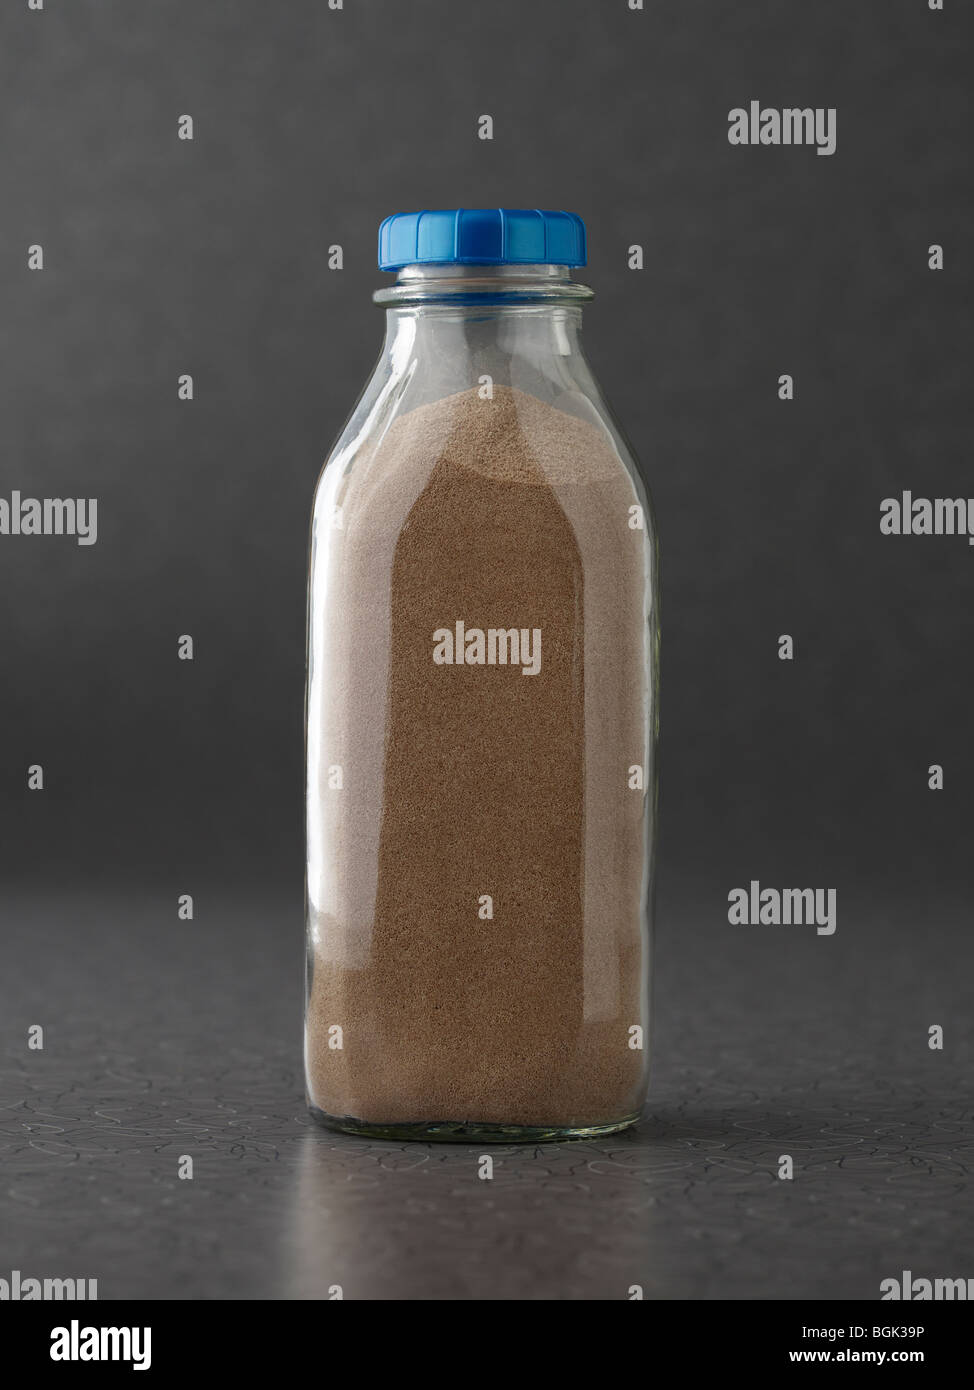 La poudre de protéine de lait au chocolat au lait en bouteille sur la surface gris Banque D'Images